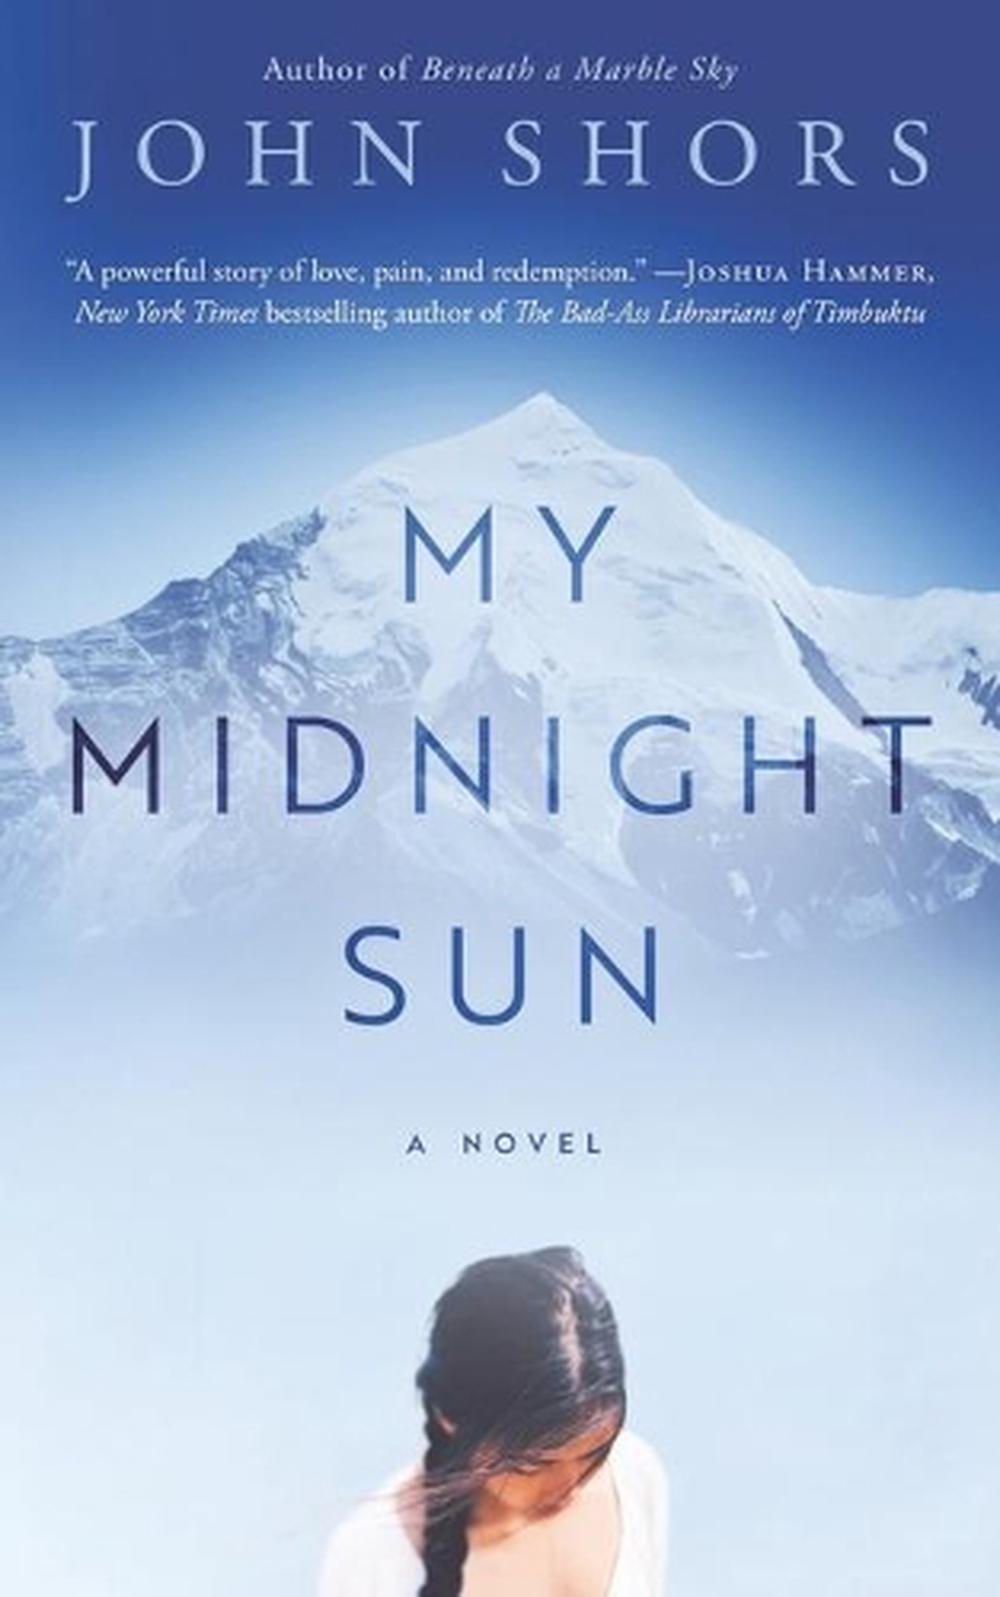 midnight sun book online